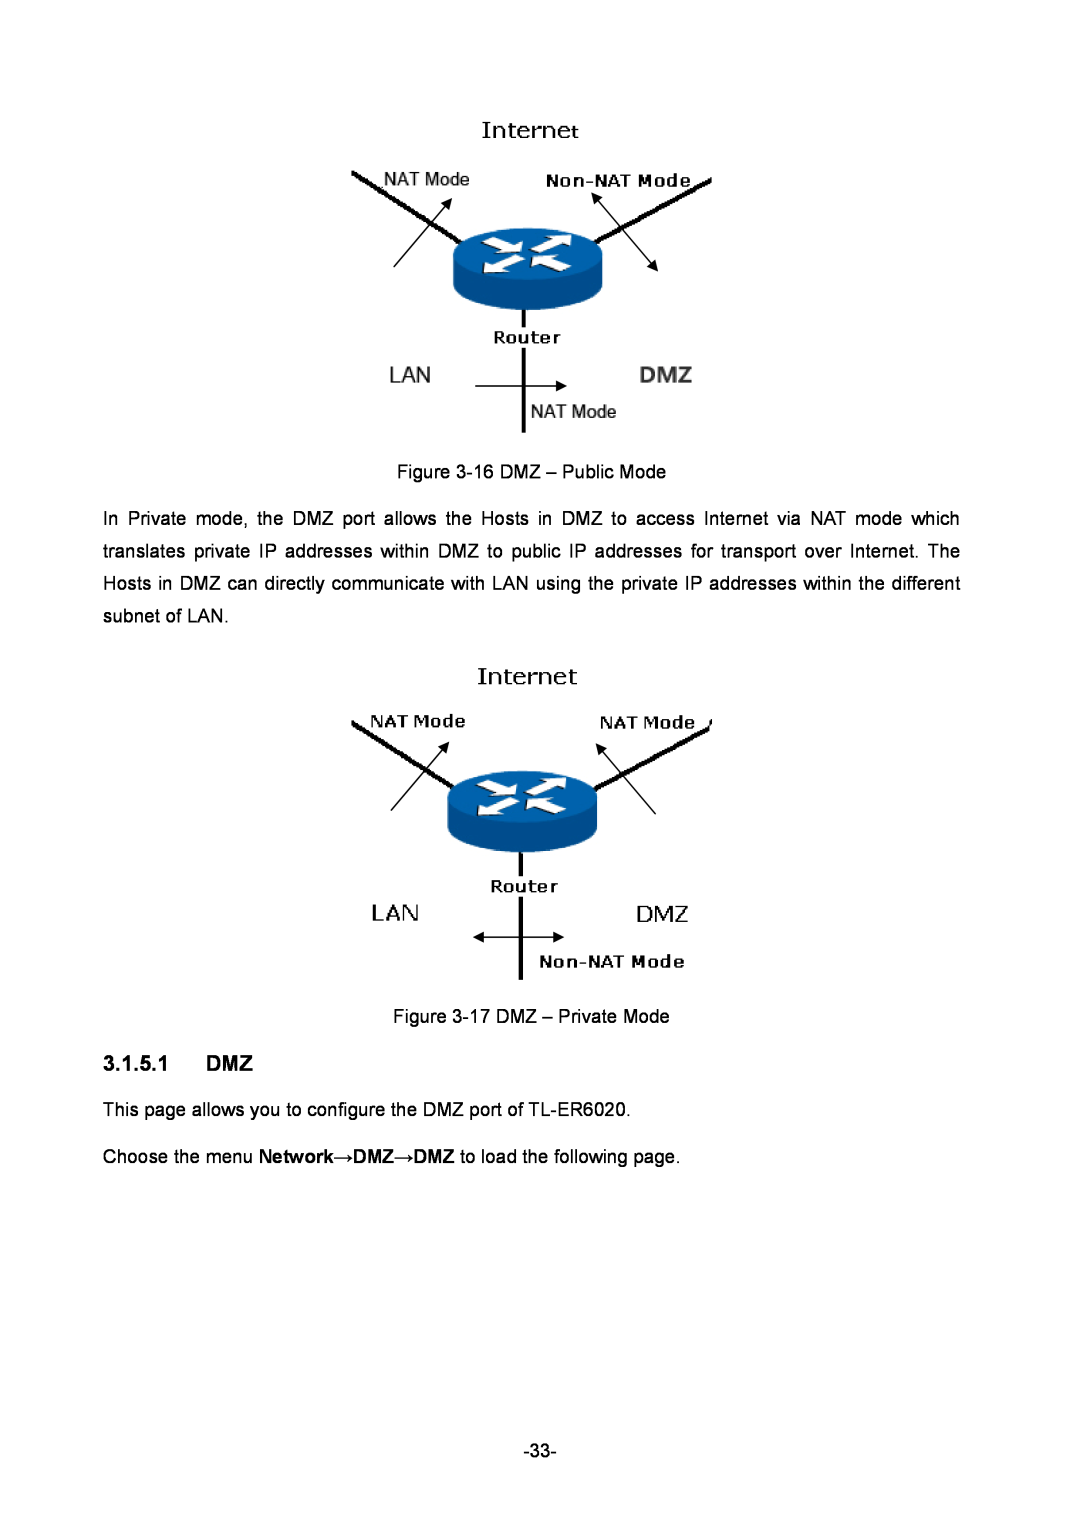 TP-Link TL-ER6020 manual 3.1.5.1 DMZ 